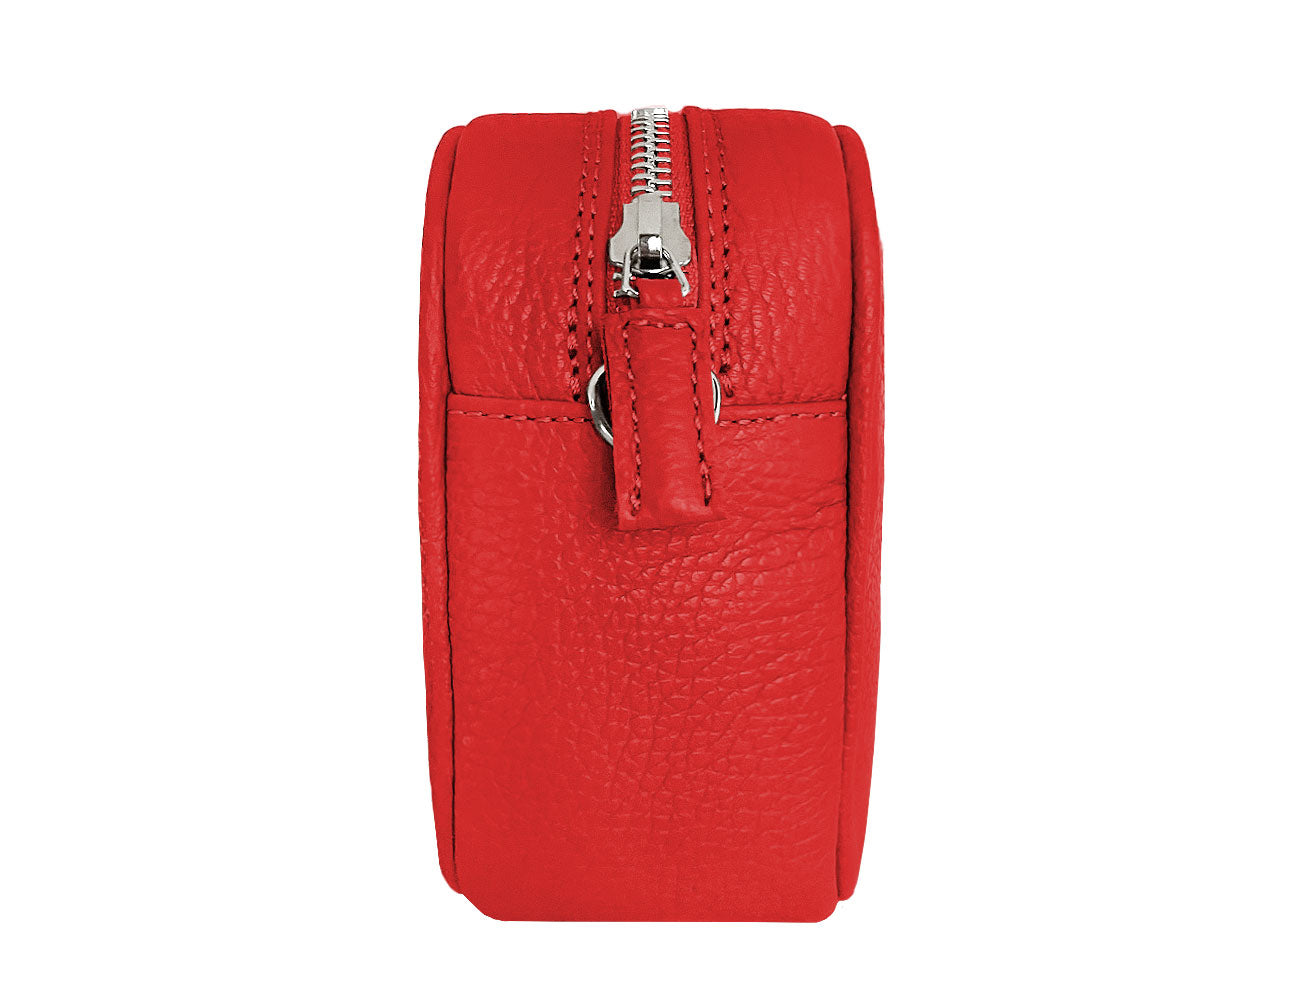 minibag PLUS 2 in rot, rote Umhängetasche, rote Ledertasche, Seitenansicht minibag PLUS 2